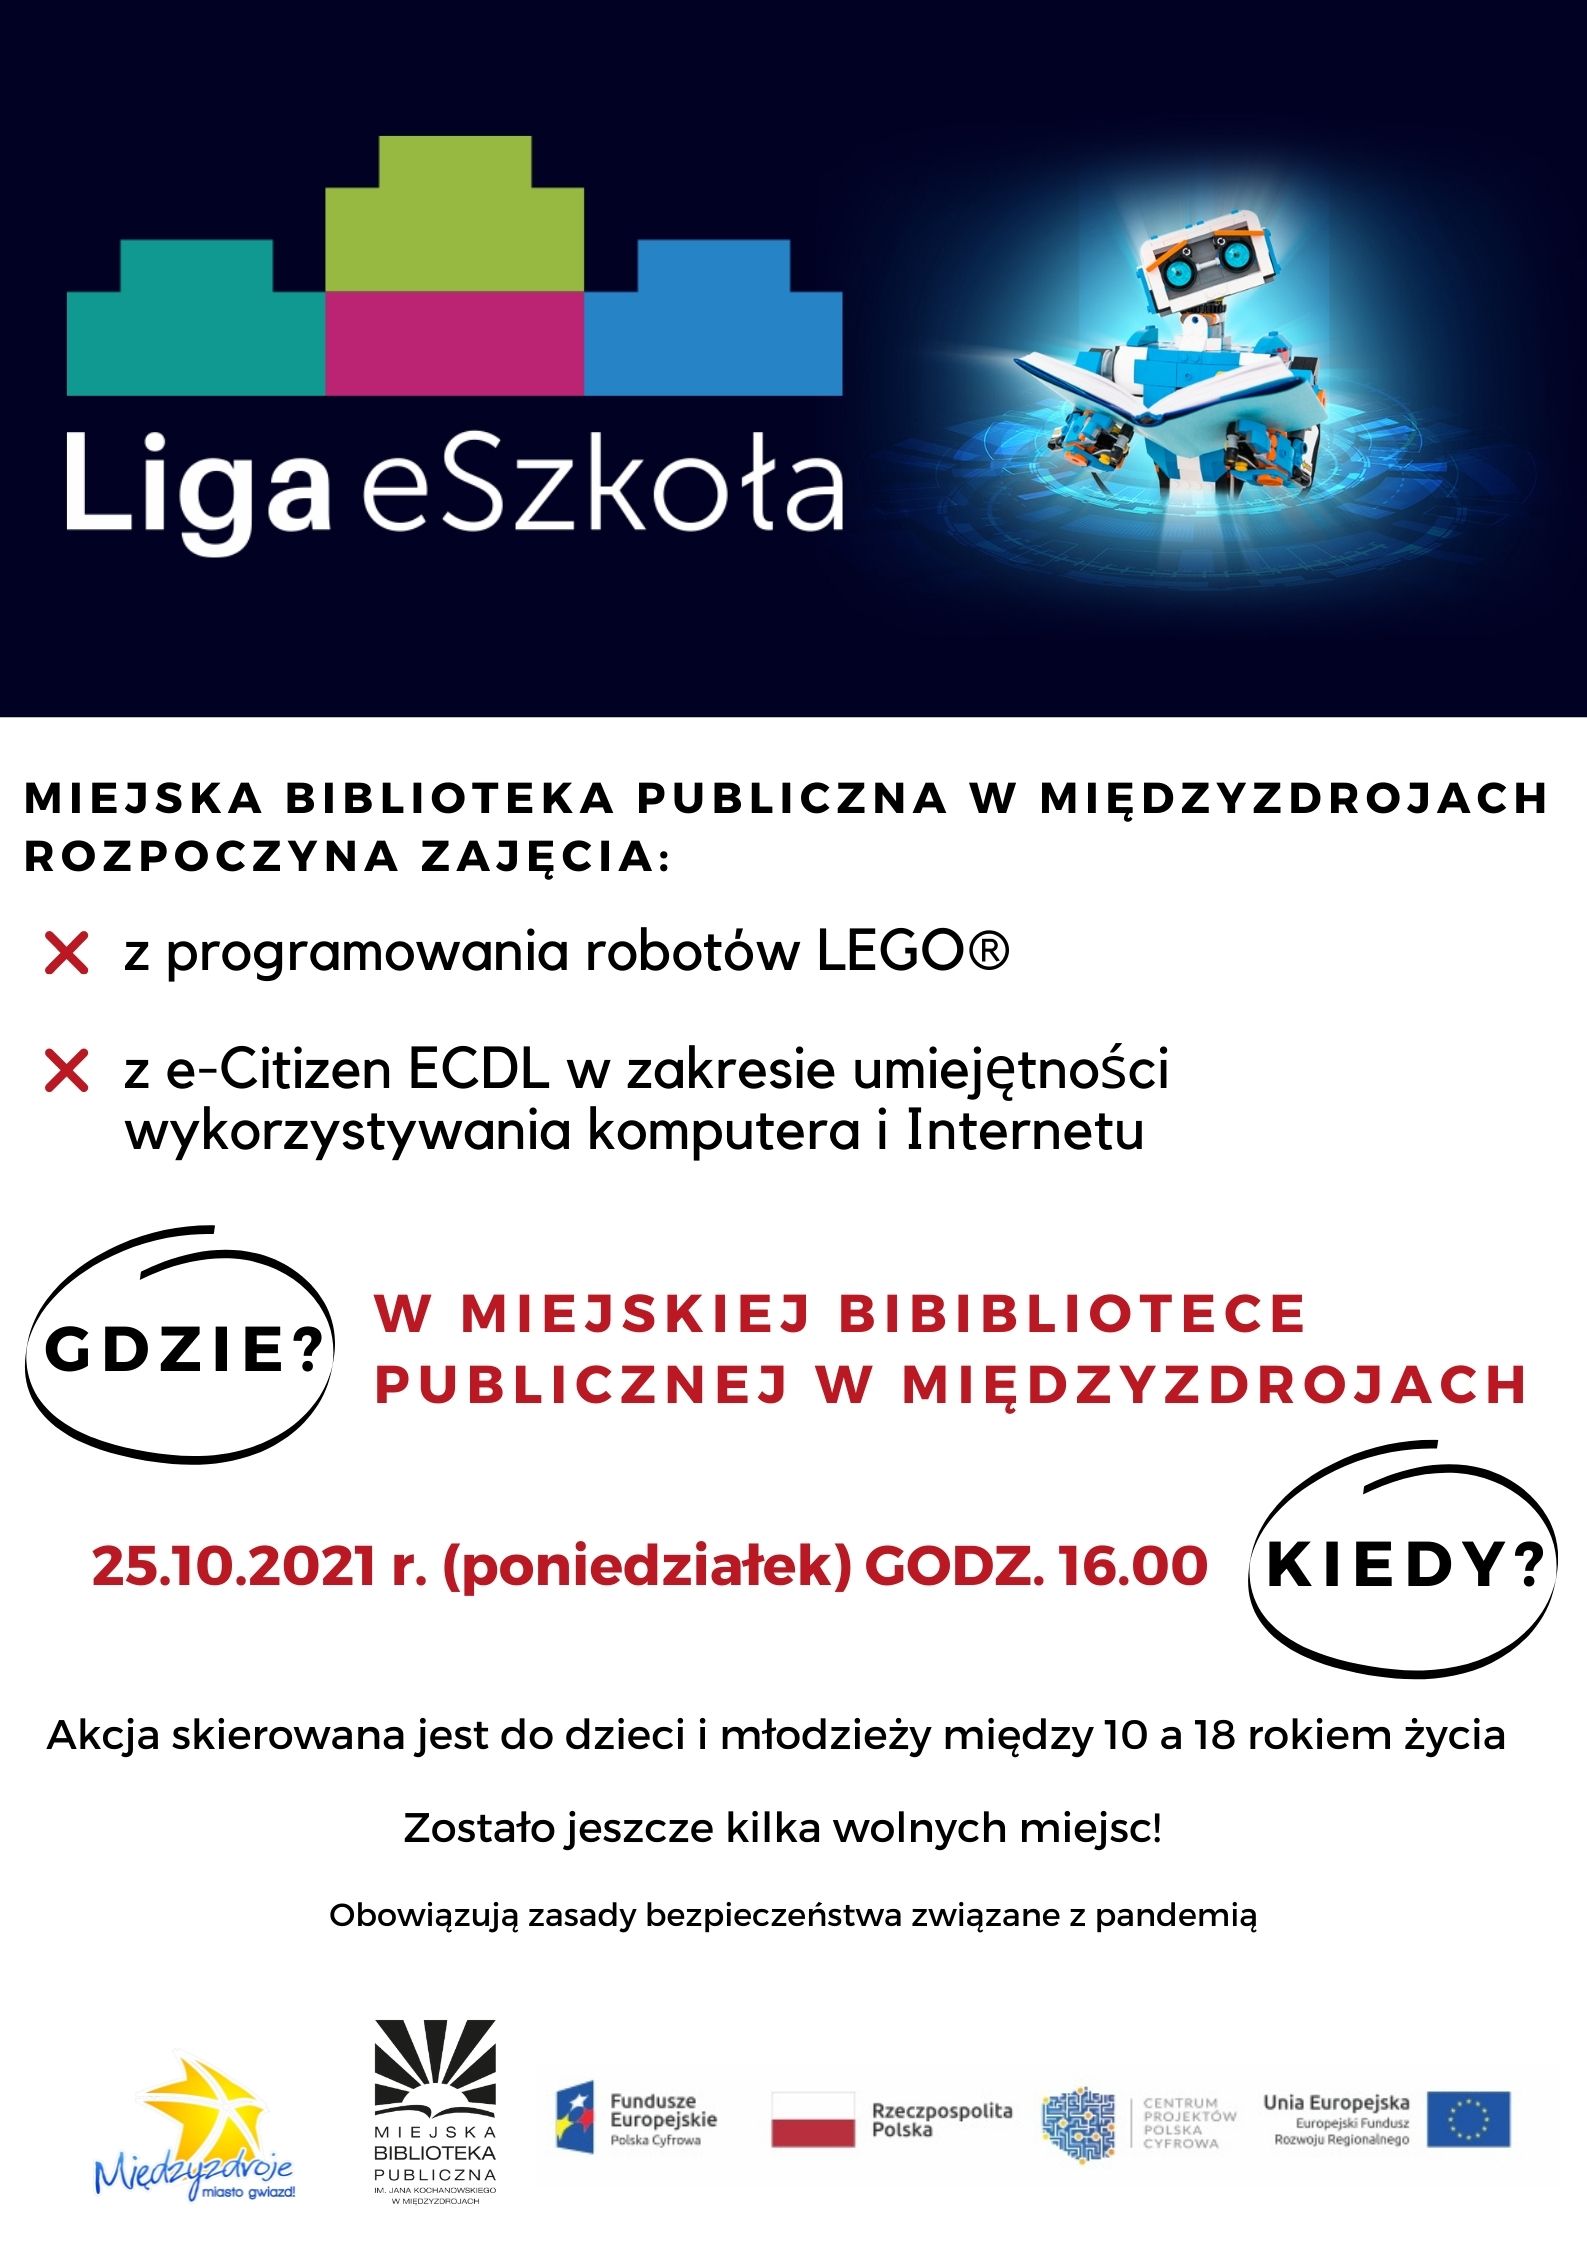 Zajęcia z ECDL i Lego Spike w ramach programu Liga eSzkoła w międzyzdrojskiej bibliotece - 25 października 2021 r.